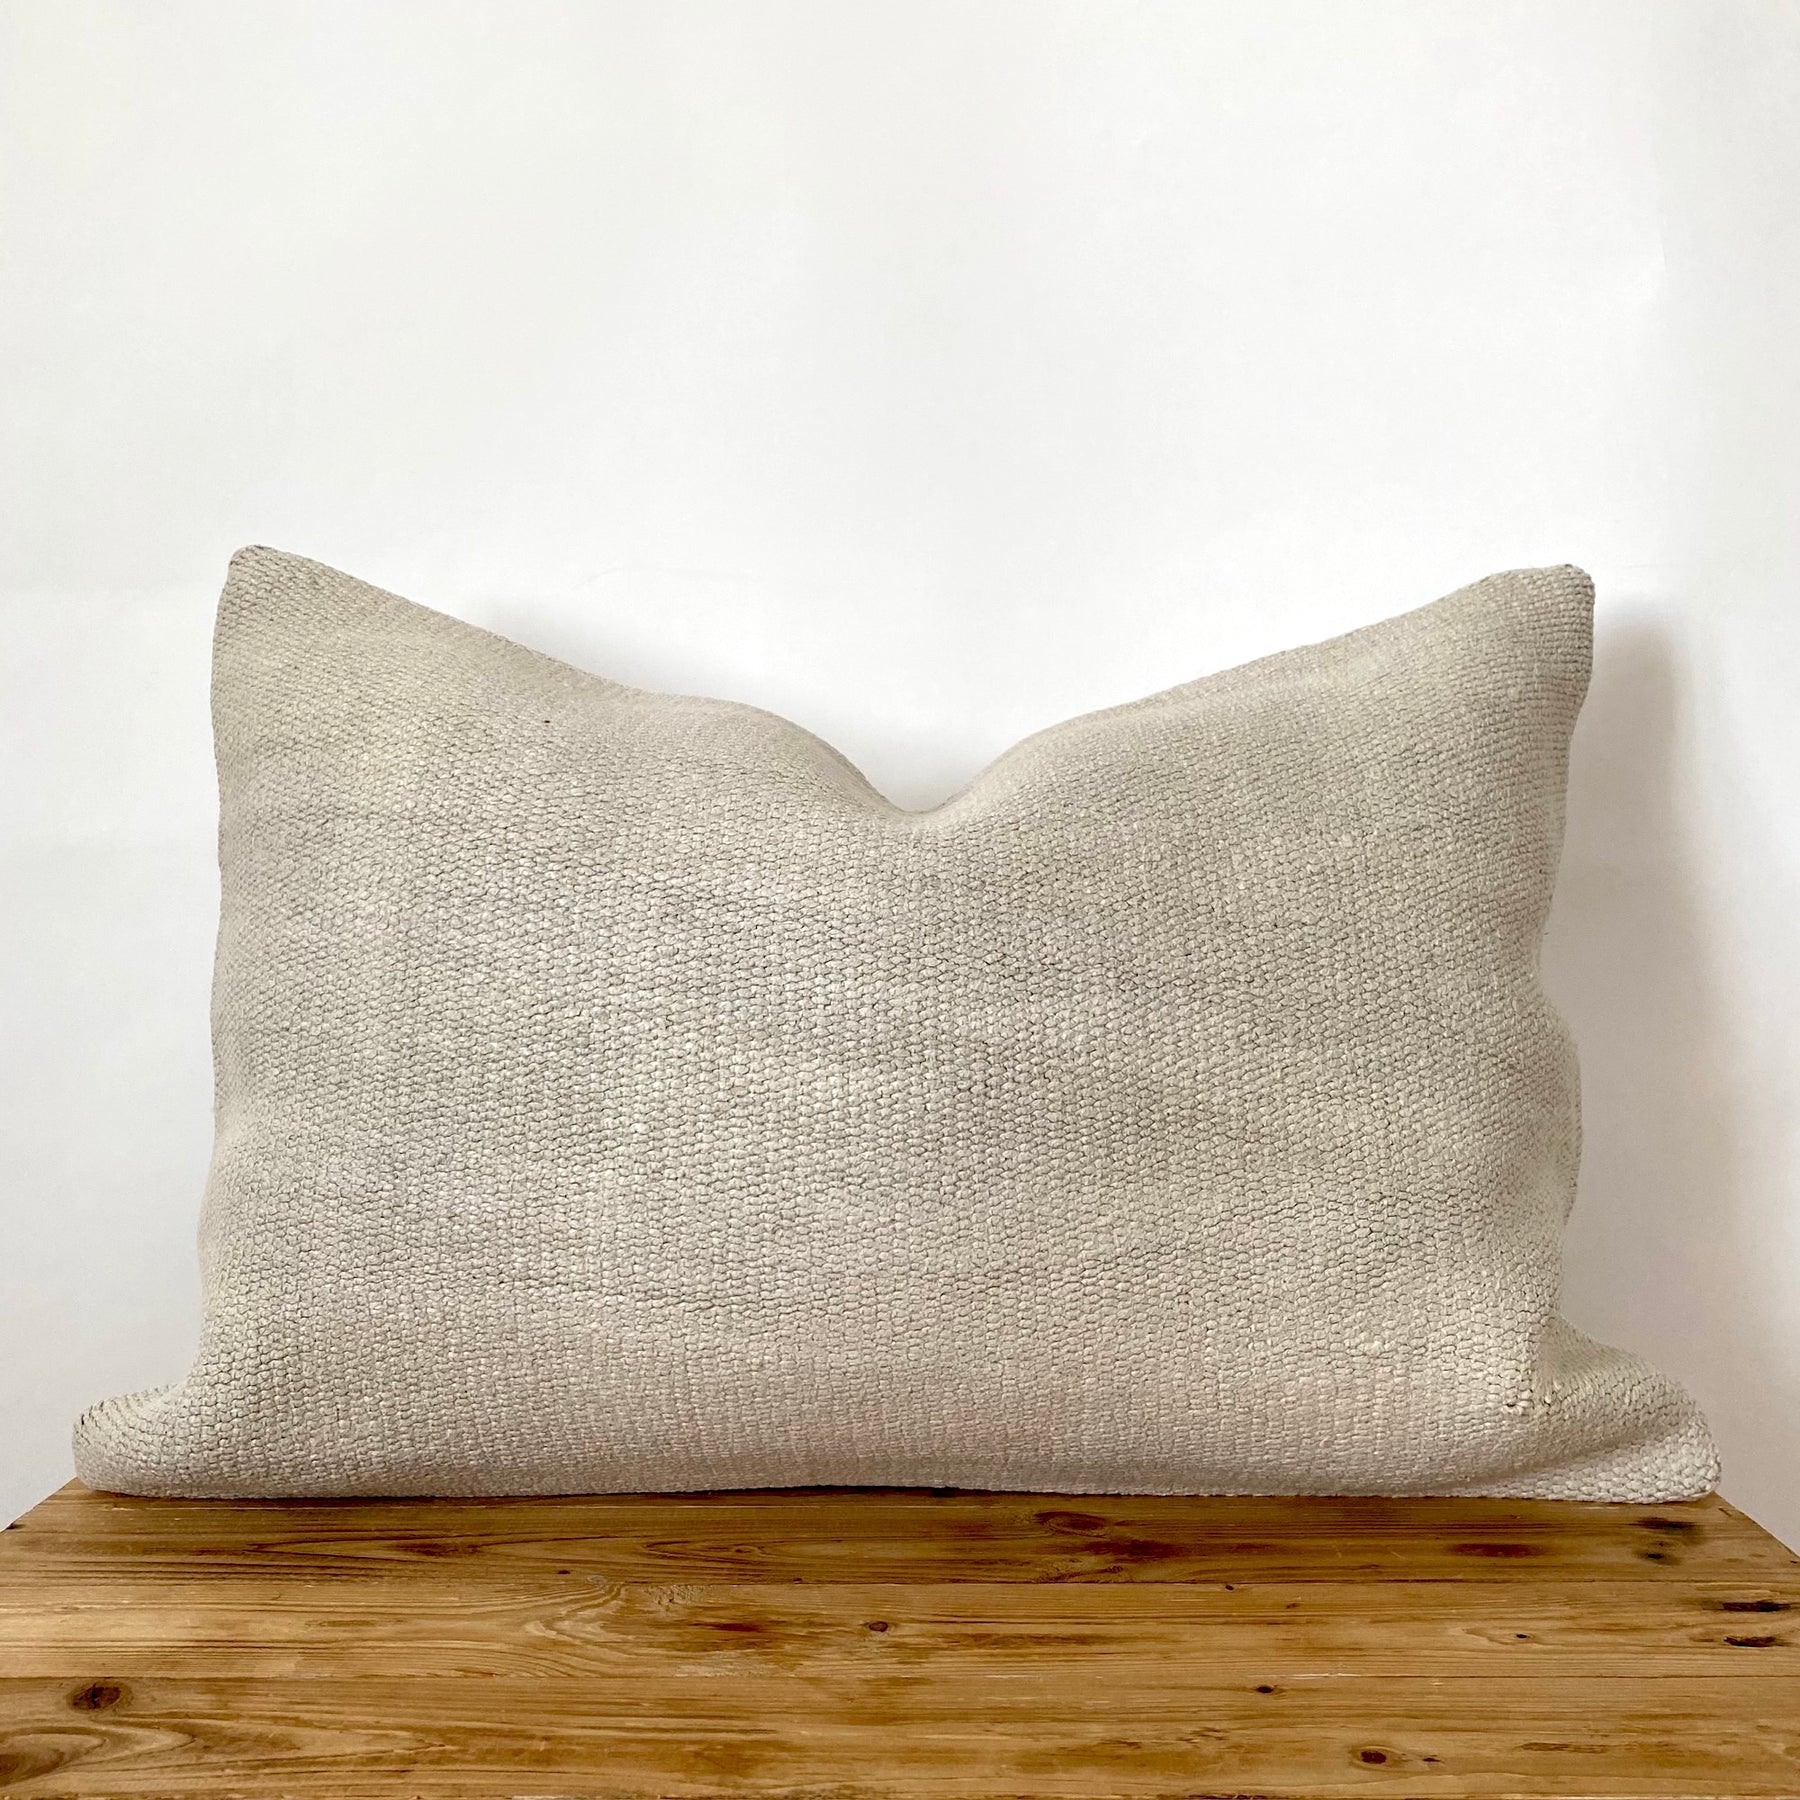 Fionna - Beige Hemp Pillow Cover - kudenrugs